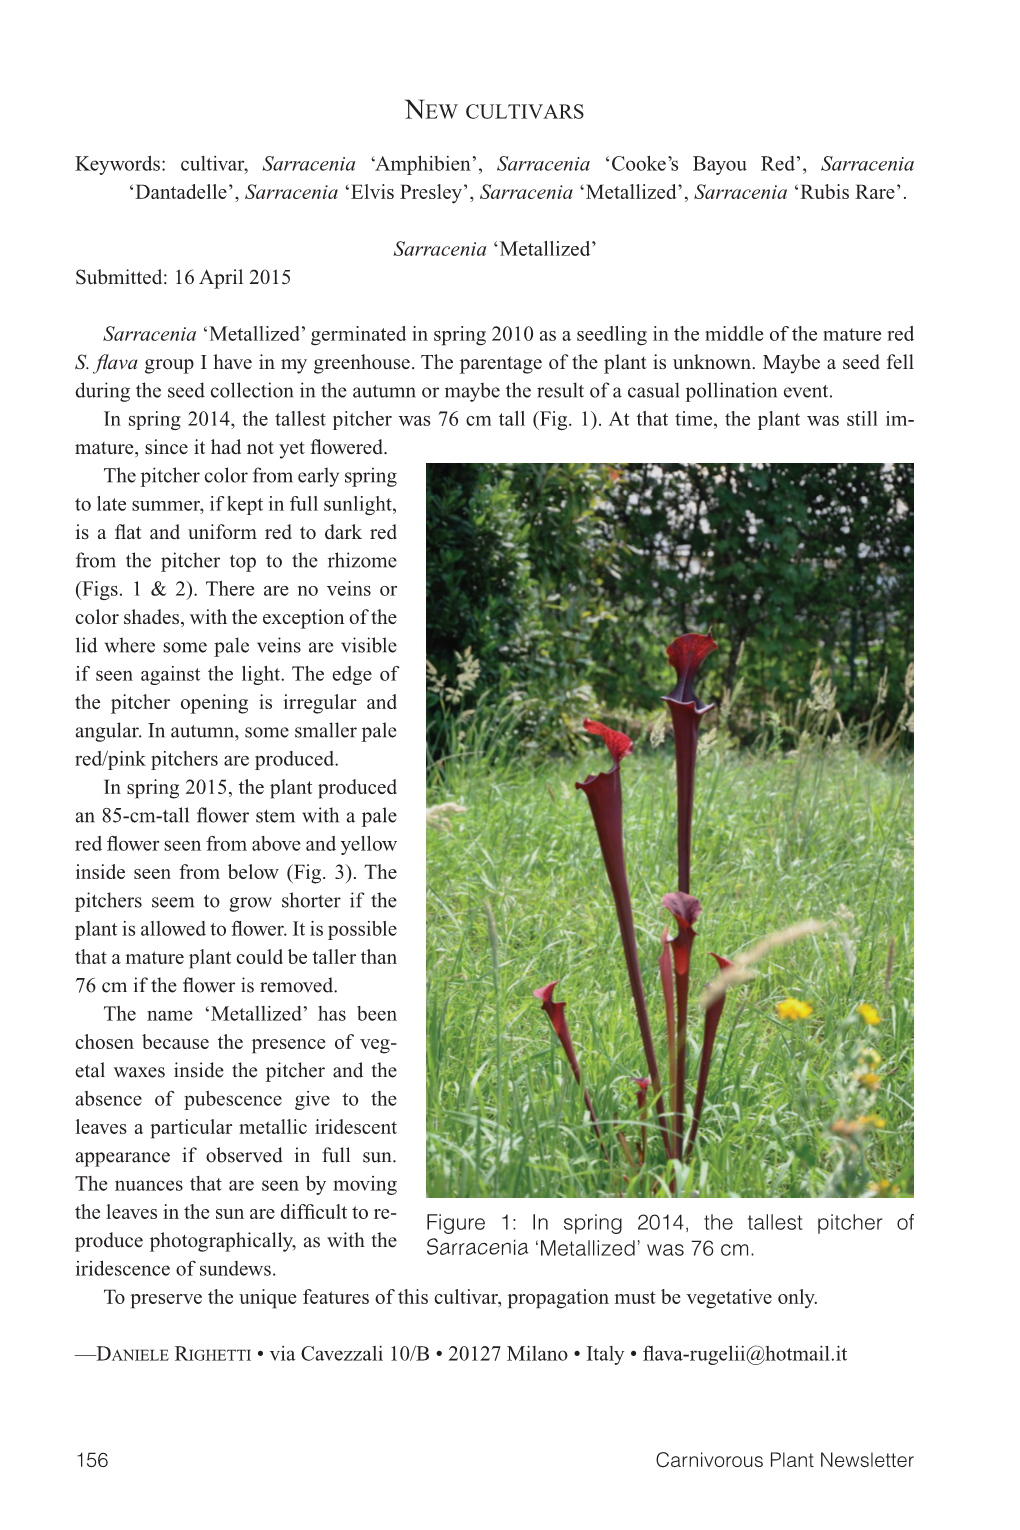 Carnivorous Plant Newsletter Vol. 44 No. 3; September 2015